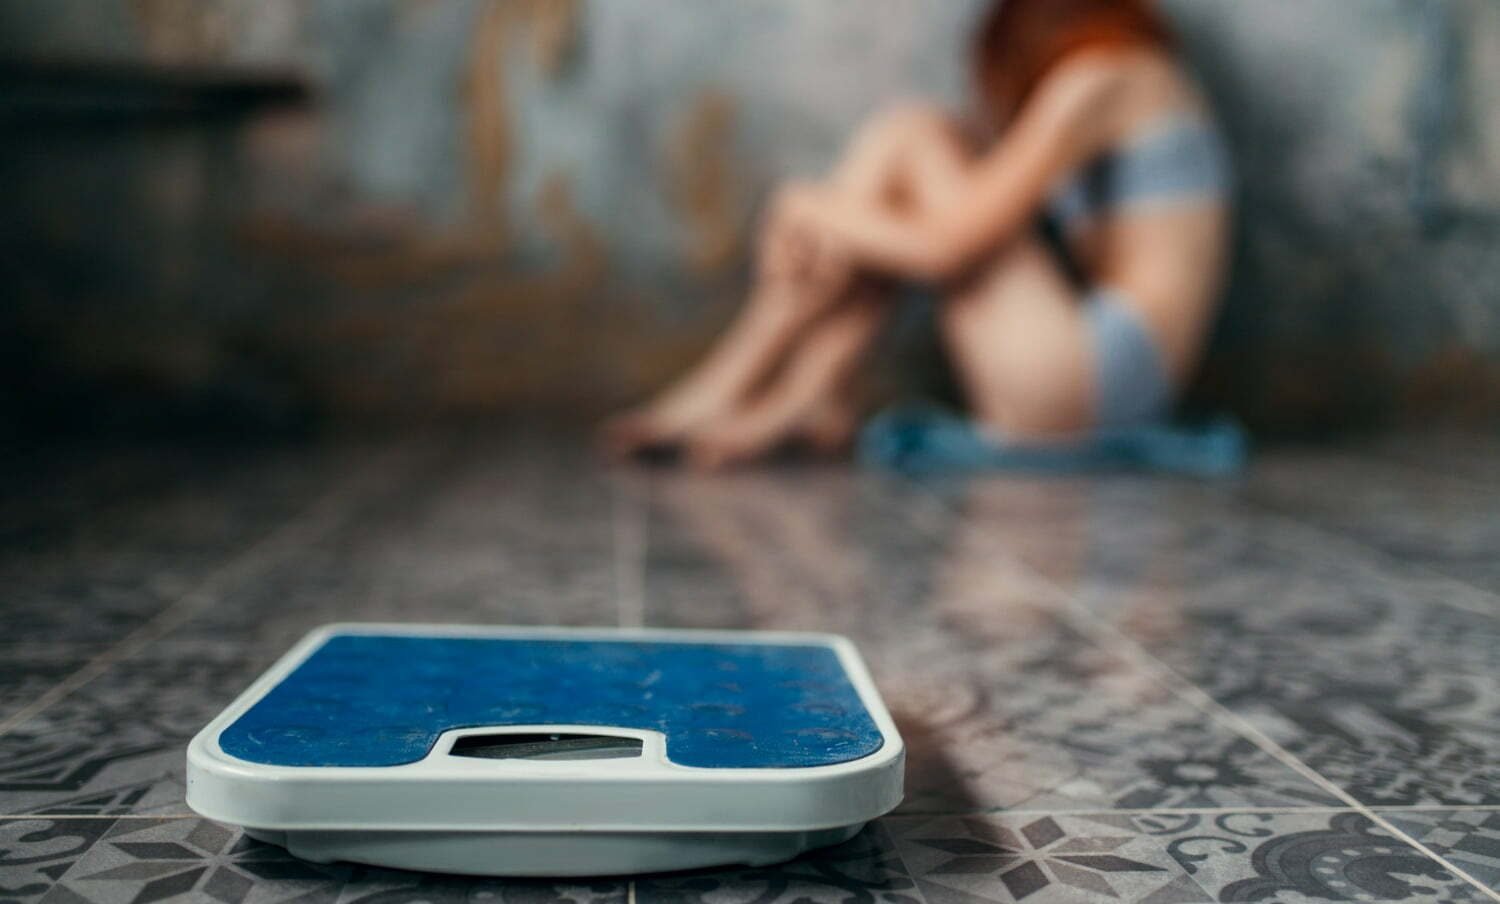 Mujer con anorexia nerviosa sentada en un rincón y un peso adelante / subir de peso